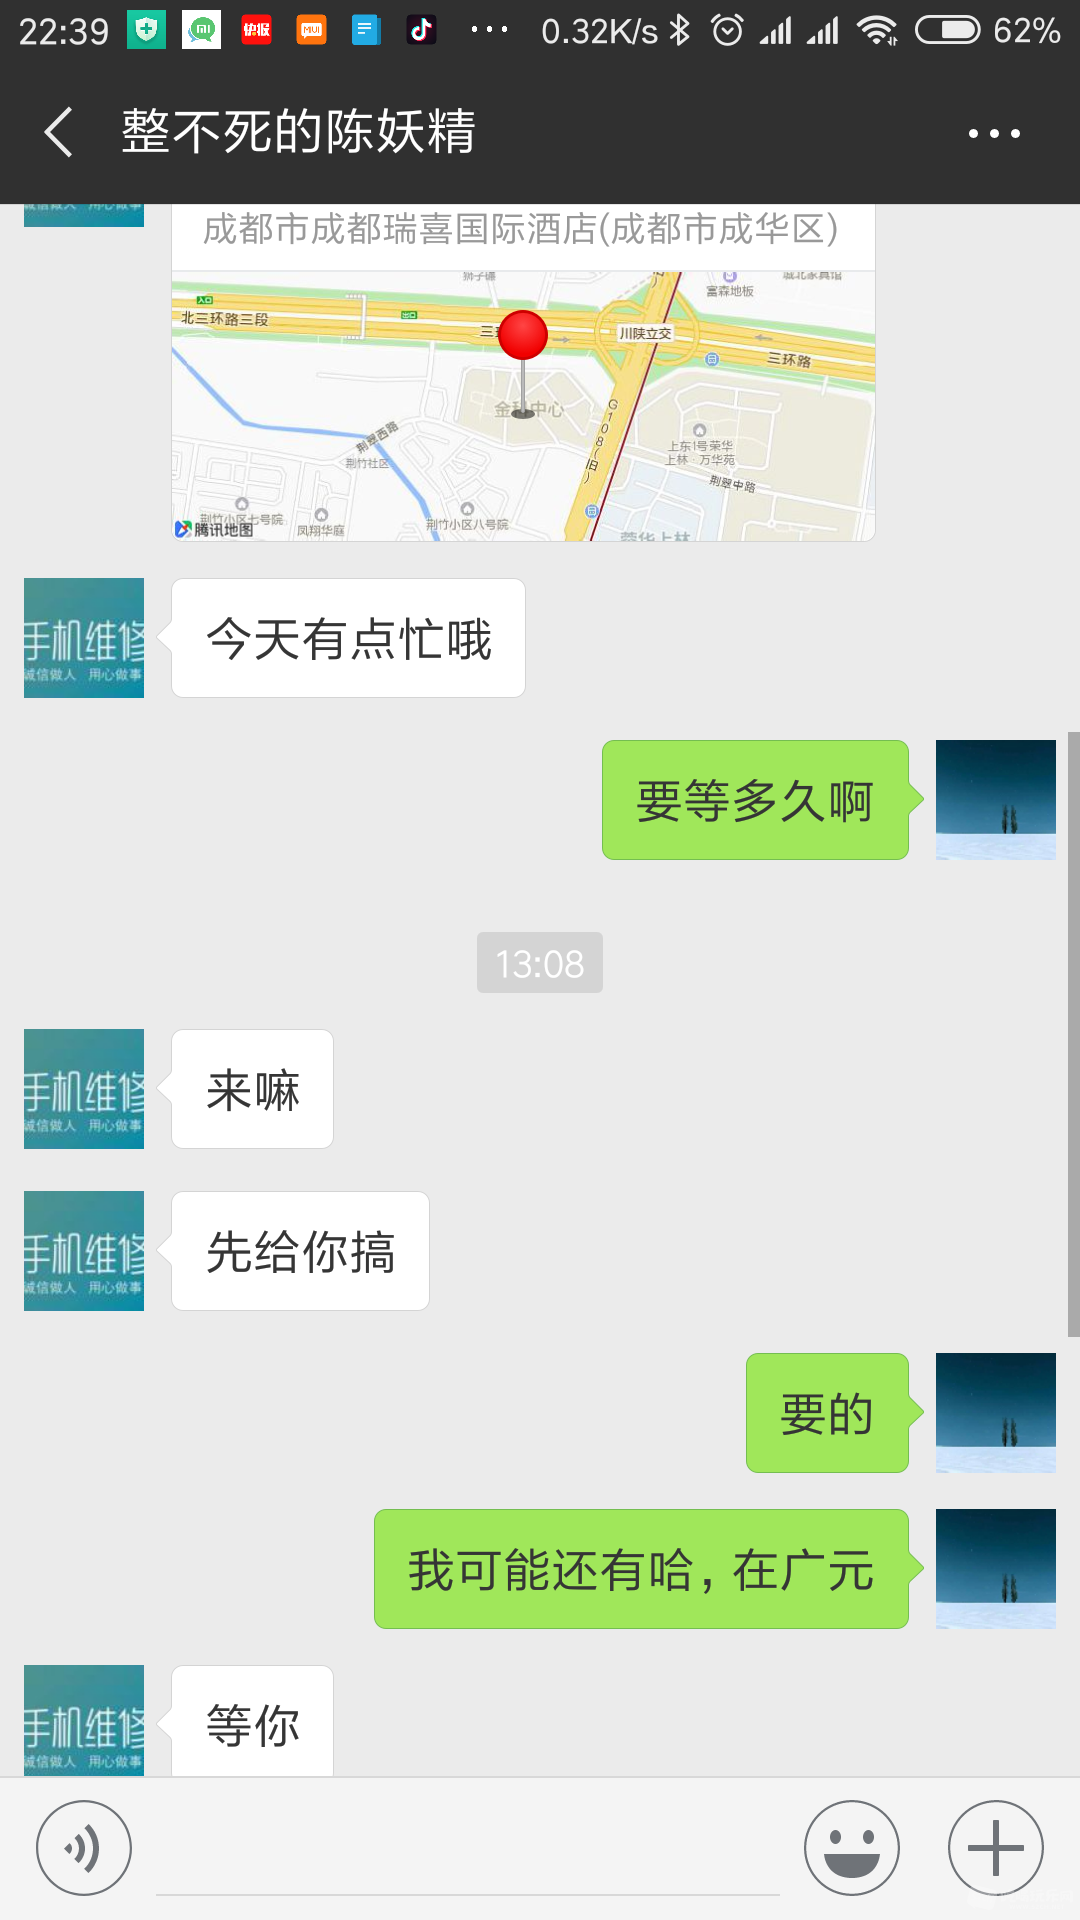 Screenshot_2018-06-08-22-39-59-694_com.tencent.mm.png